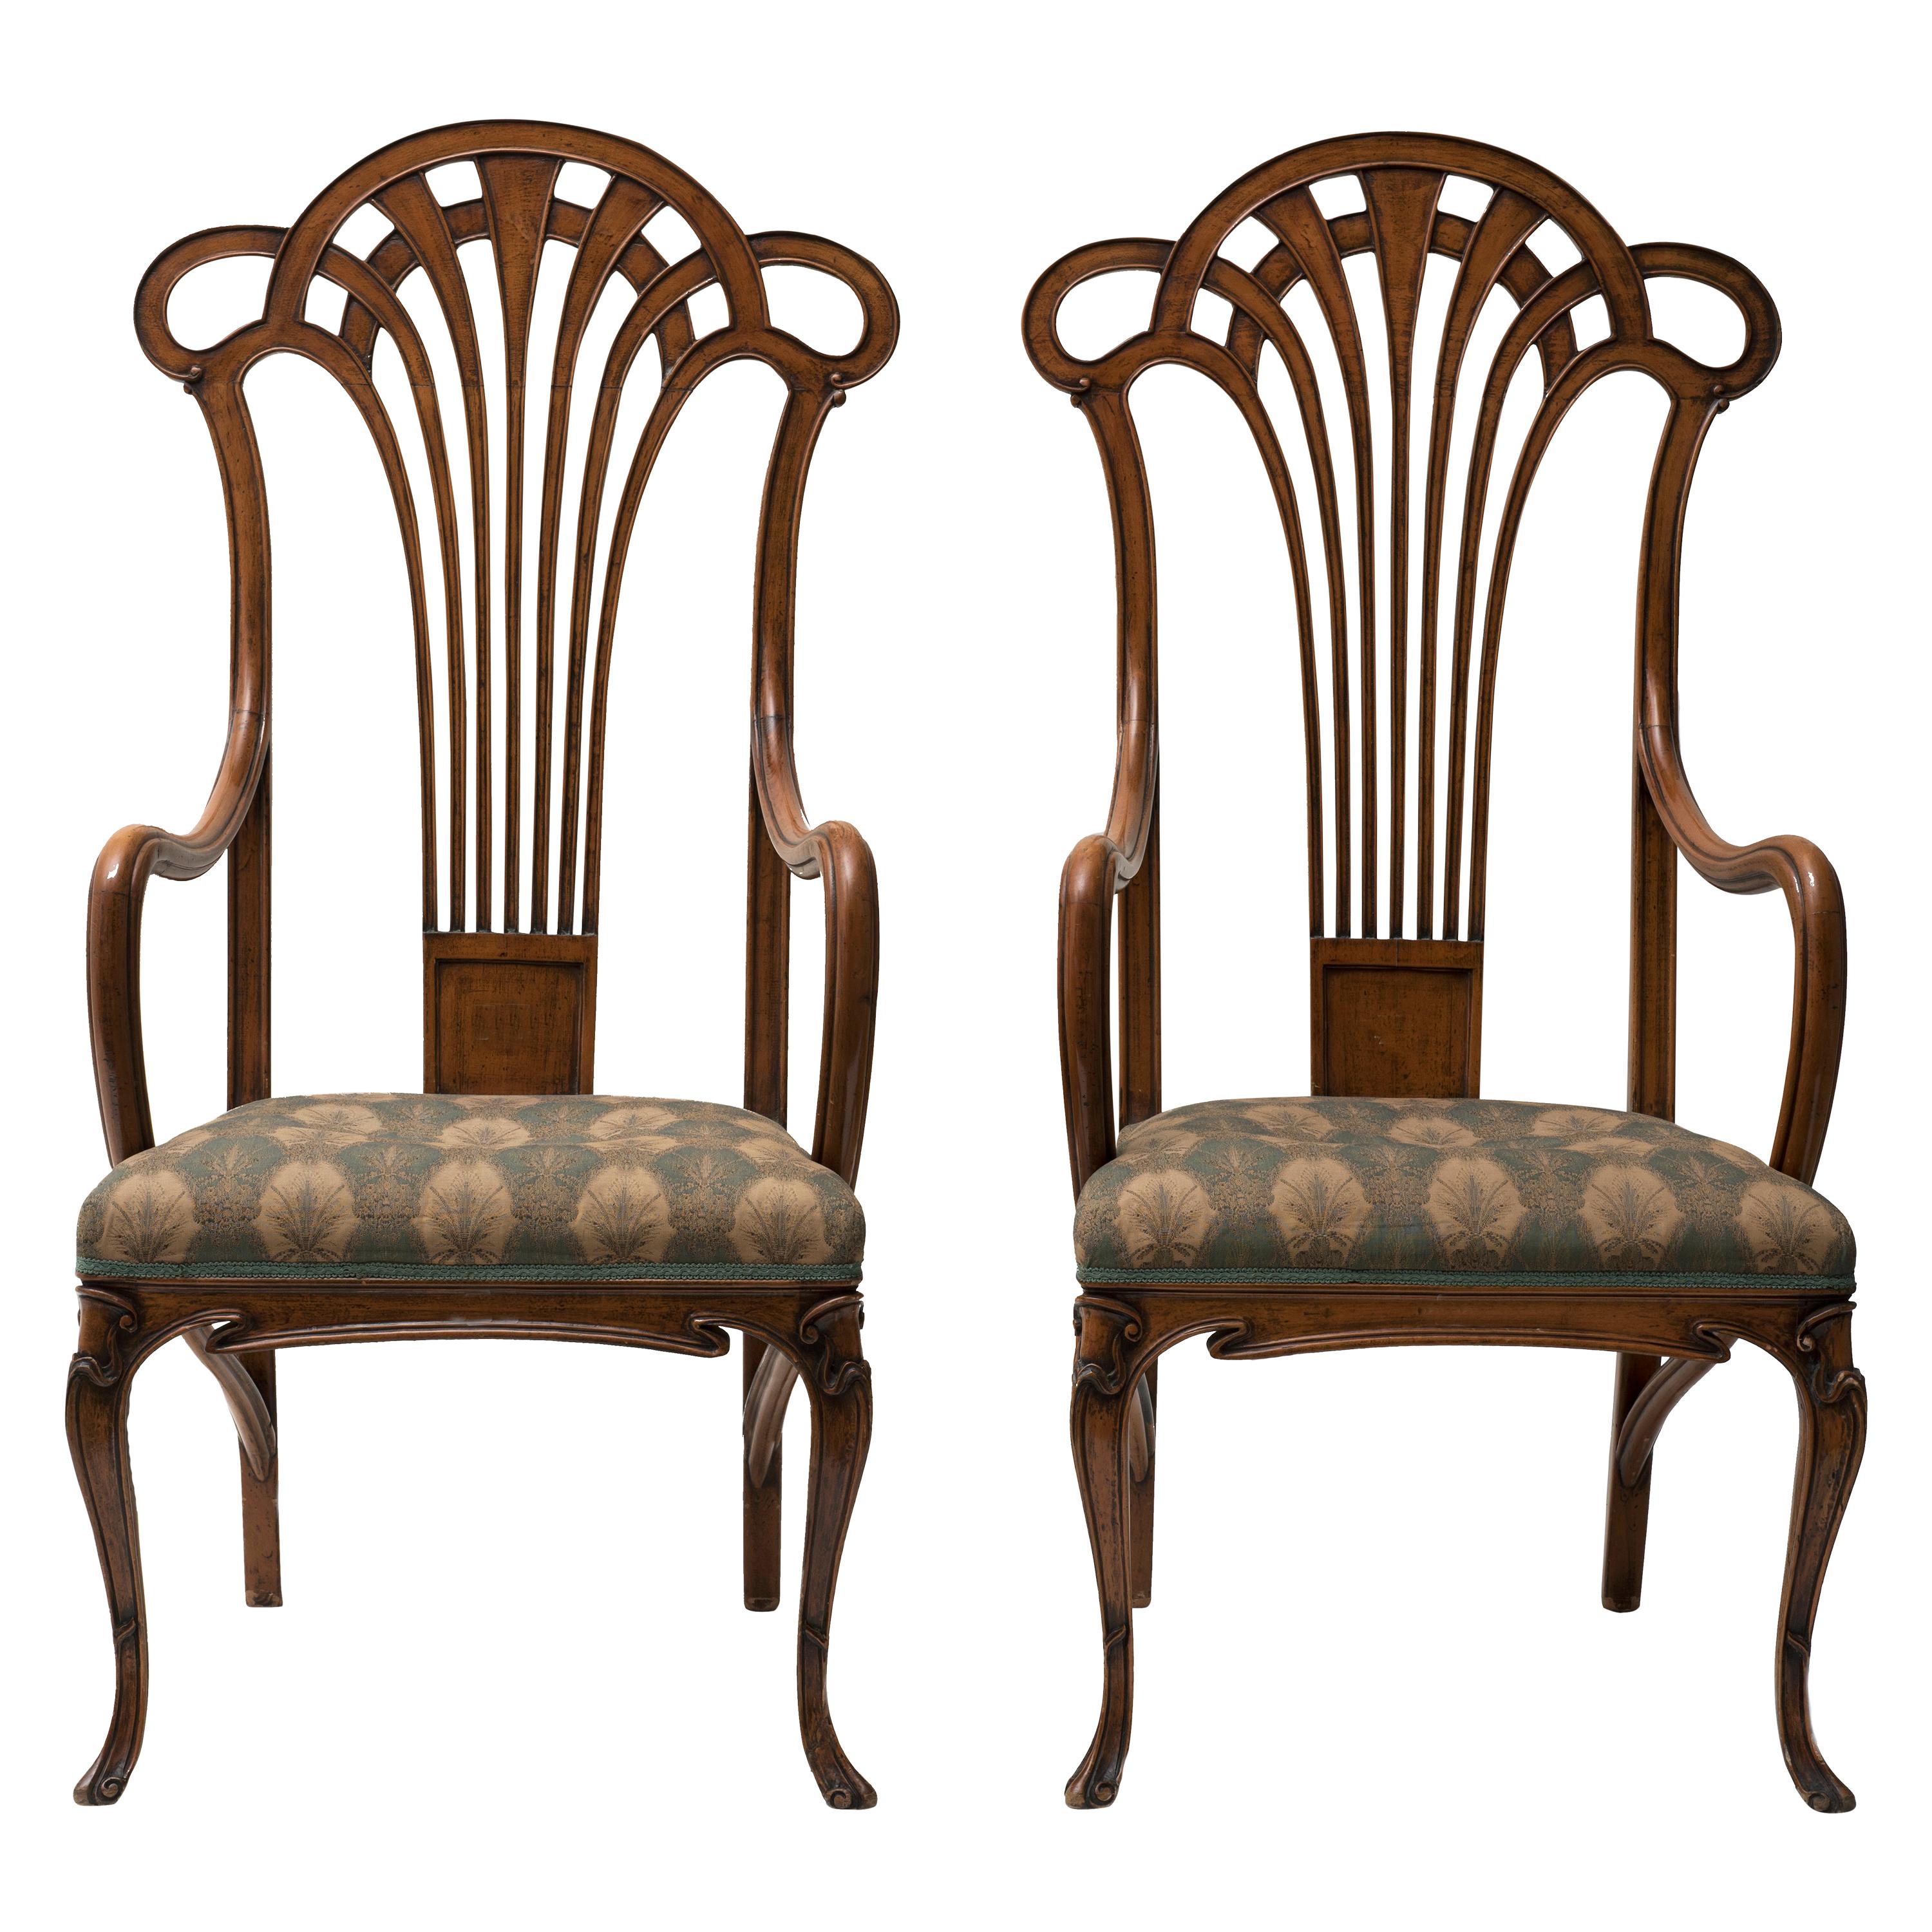 Paire de fauteuils Liberty vintage en bois, XIXe-XXe siècle